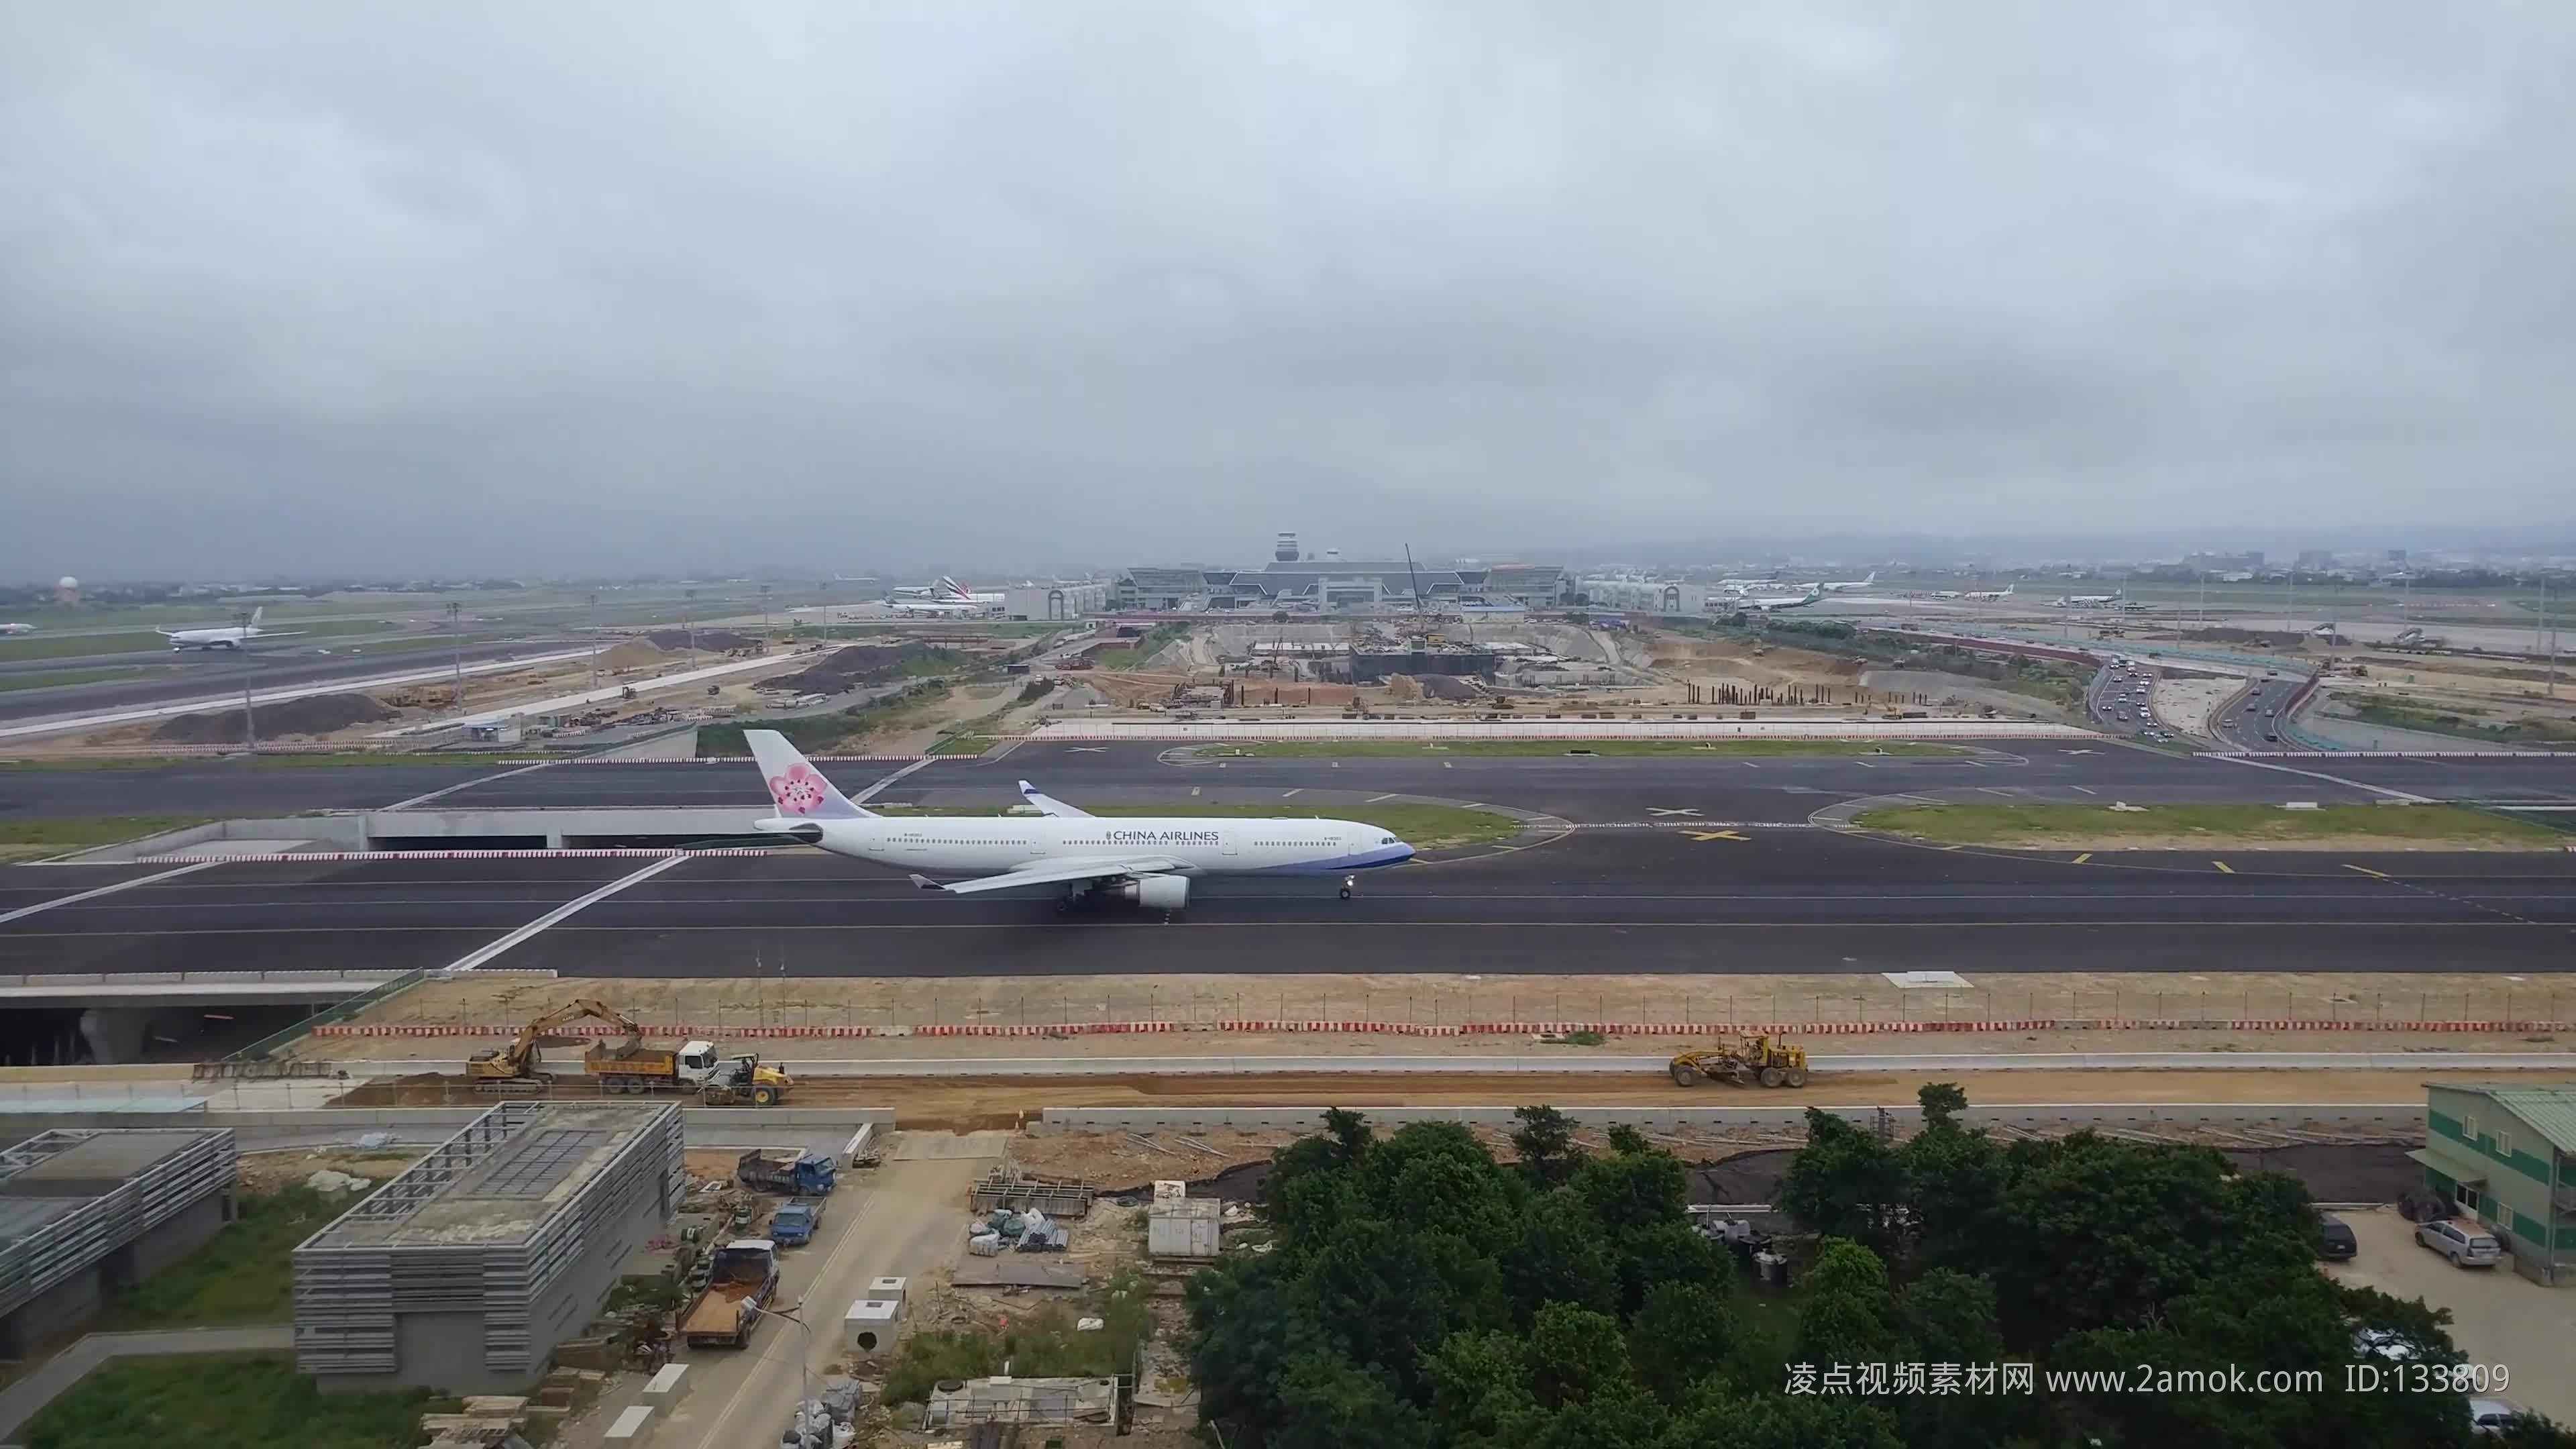 4k中国航空飞机起飞前滑行视频素材,其它视频素材下载,高清3840X2160视频素材下载,凌点视频素材网,编号:133809